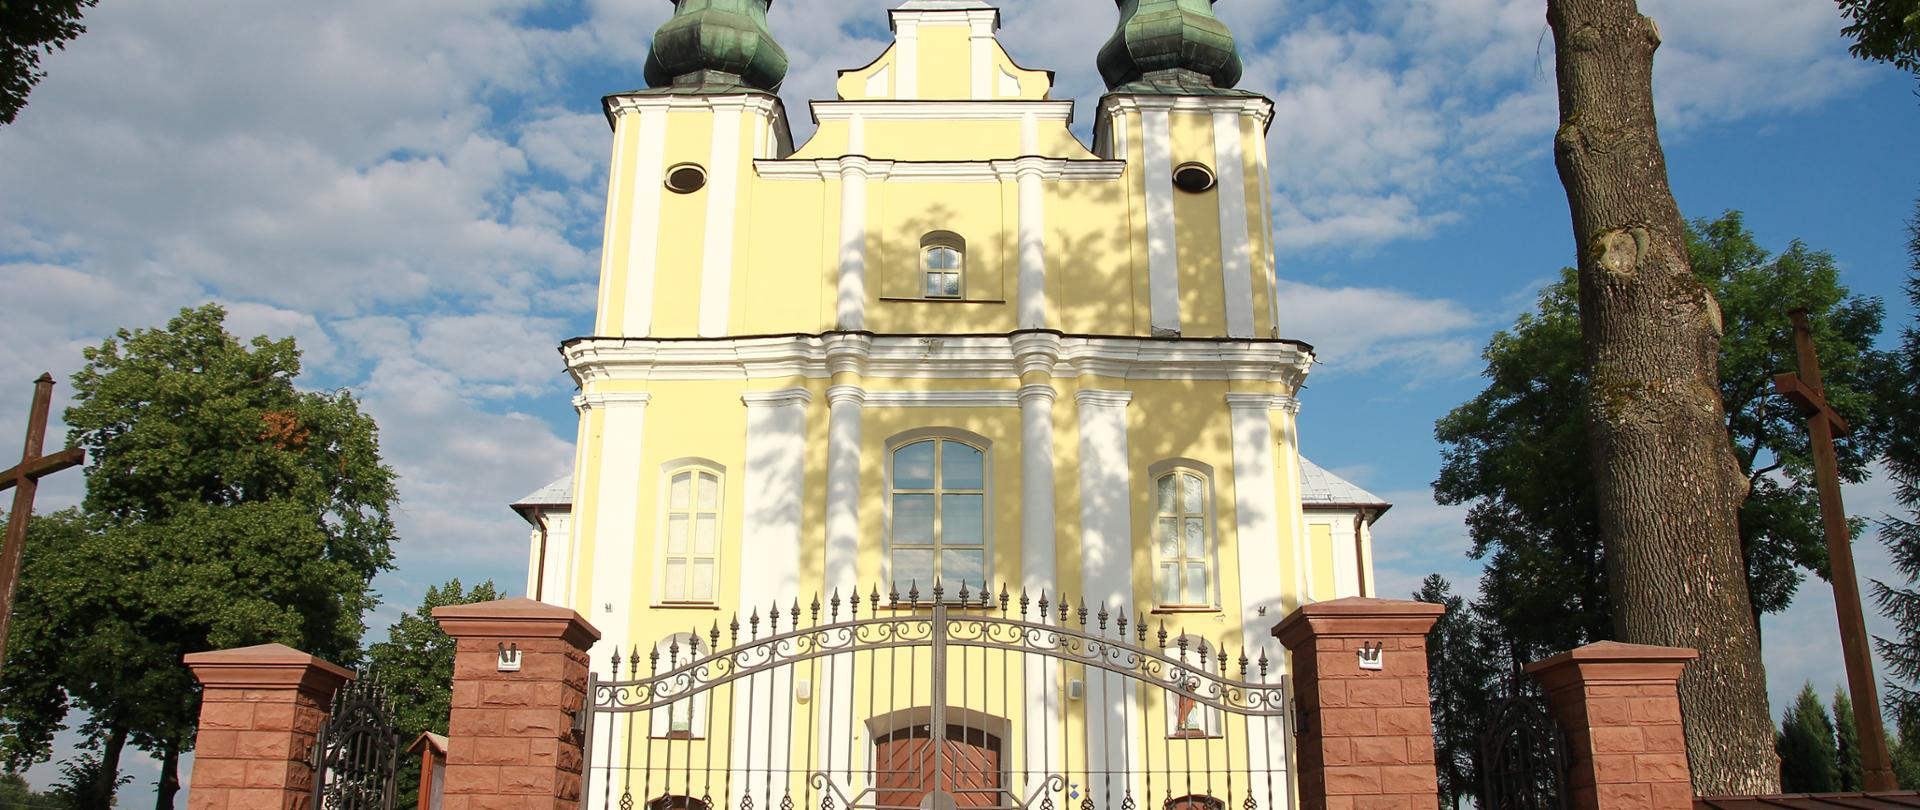 Kościół pw. św. Jana Chrzcicielaw Górznie